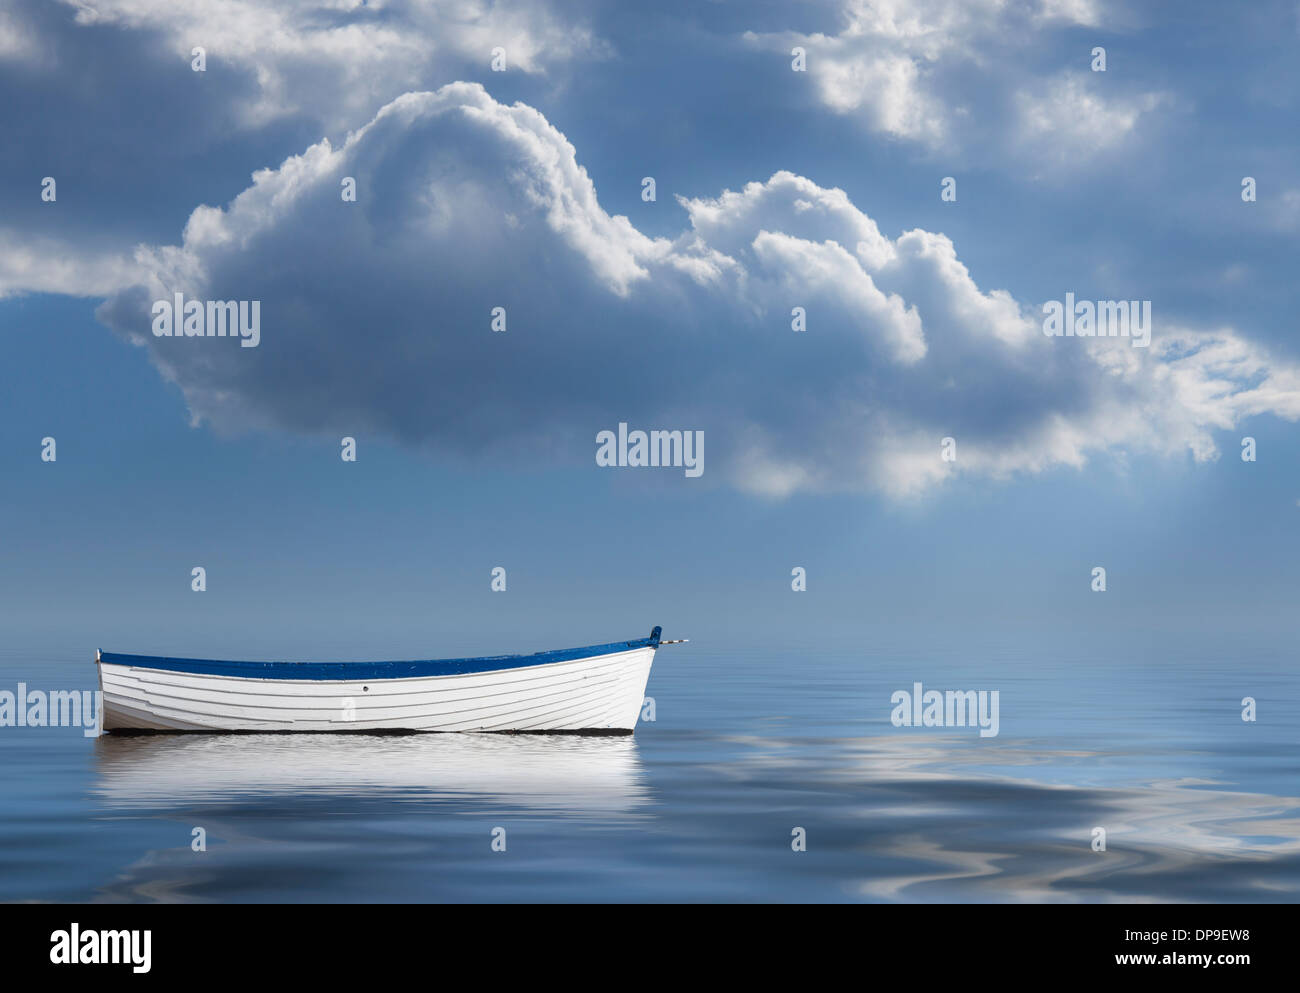 La soledad, la falta de liderazgo, perdido, sin rumbo, a la deriva una imagen conceptual del vacío bote a remo en el mar Foto de stock